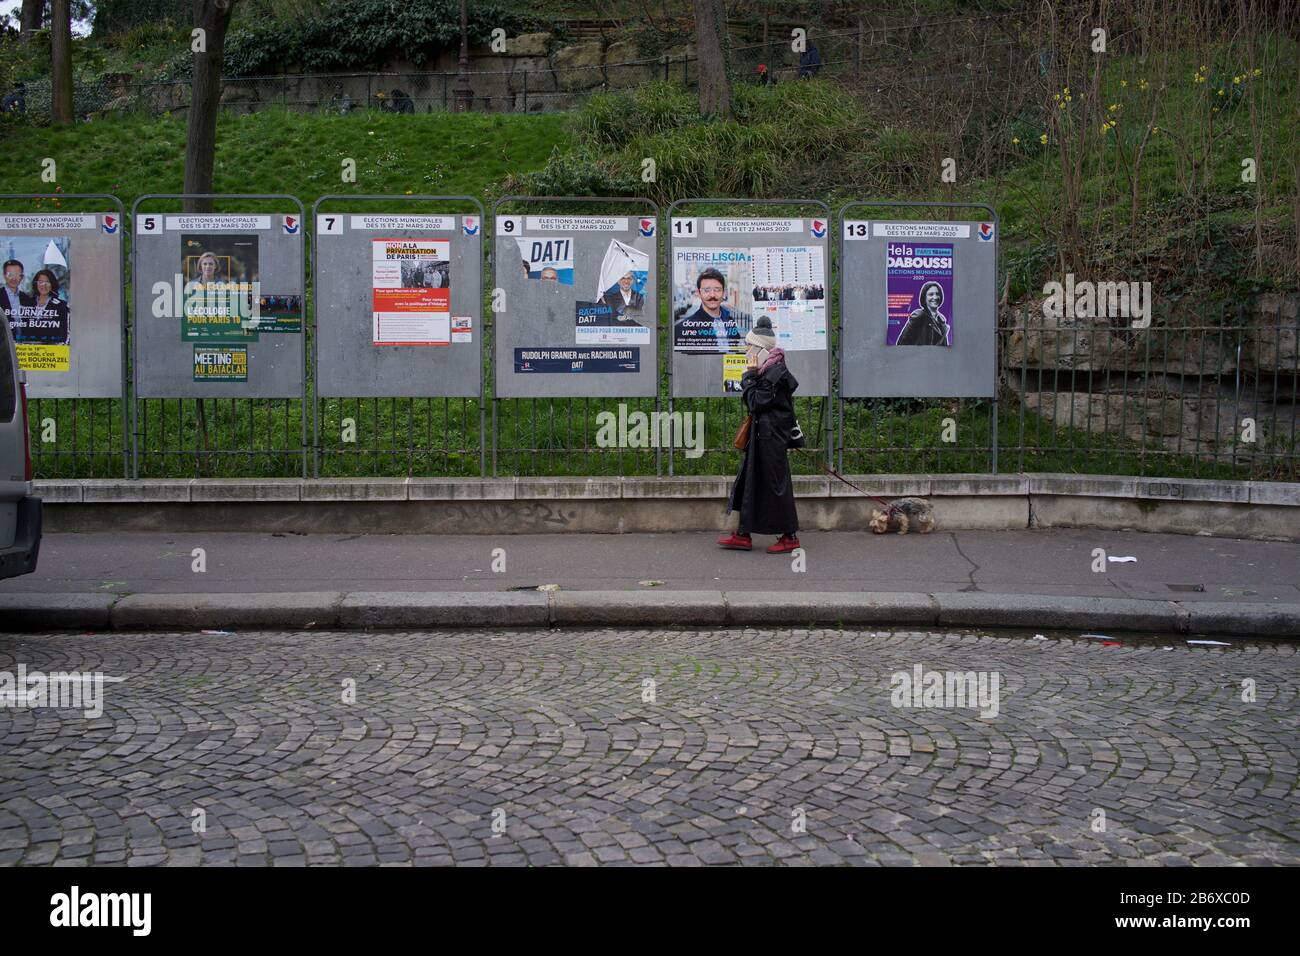 La femme passe devant des groupes d'exposition montrant des candidats aux élections municipales françaises, rue Ronsard, Montmartre, 75018 Paris, France, mars 2020 Banque D'Images